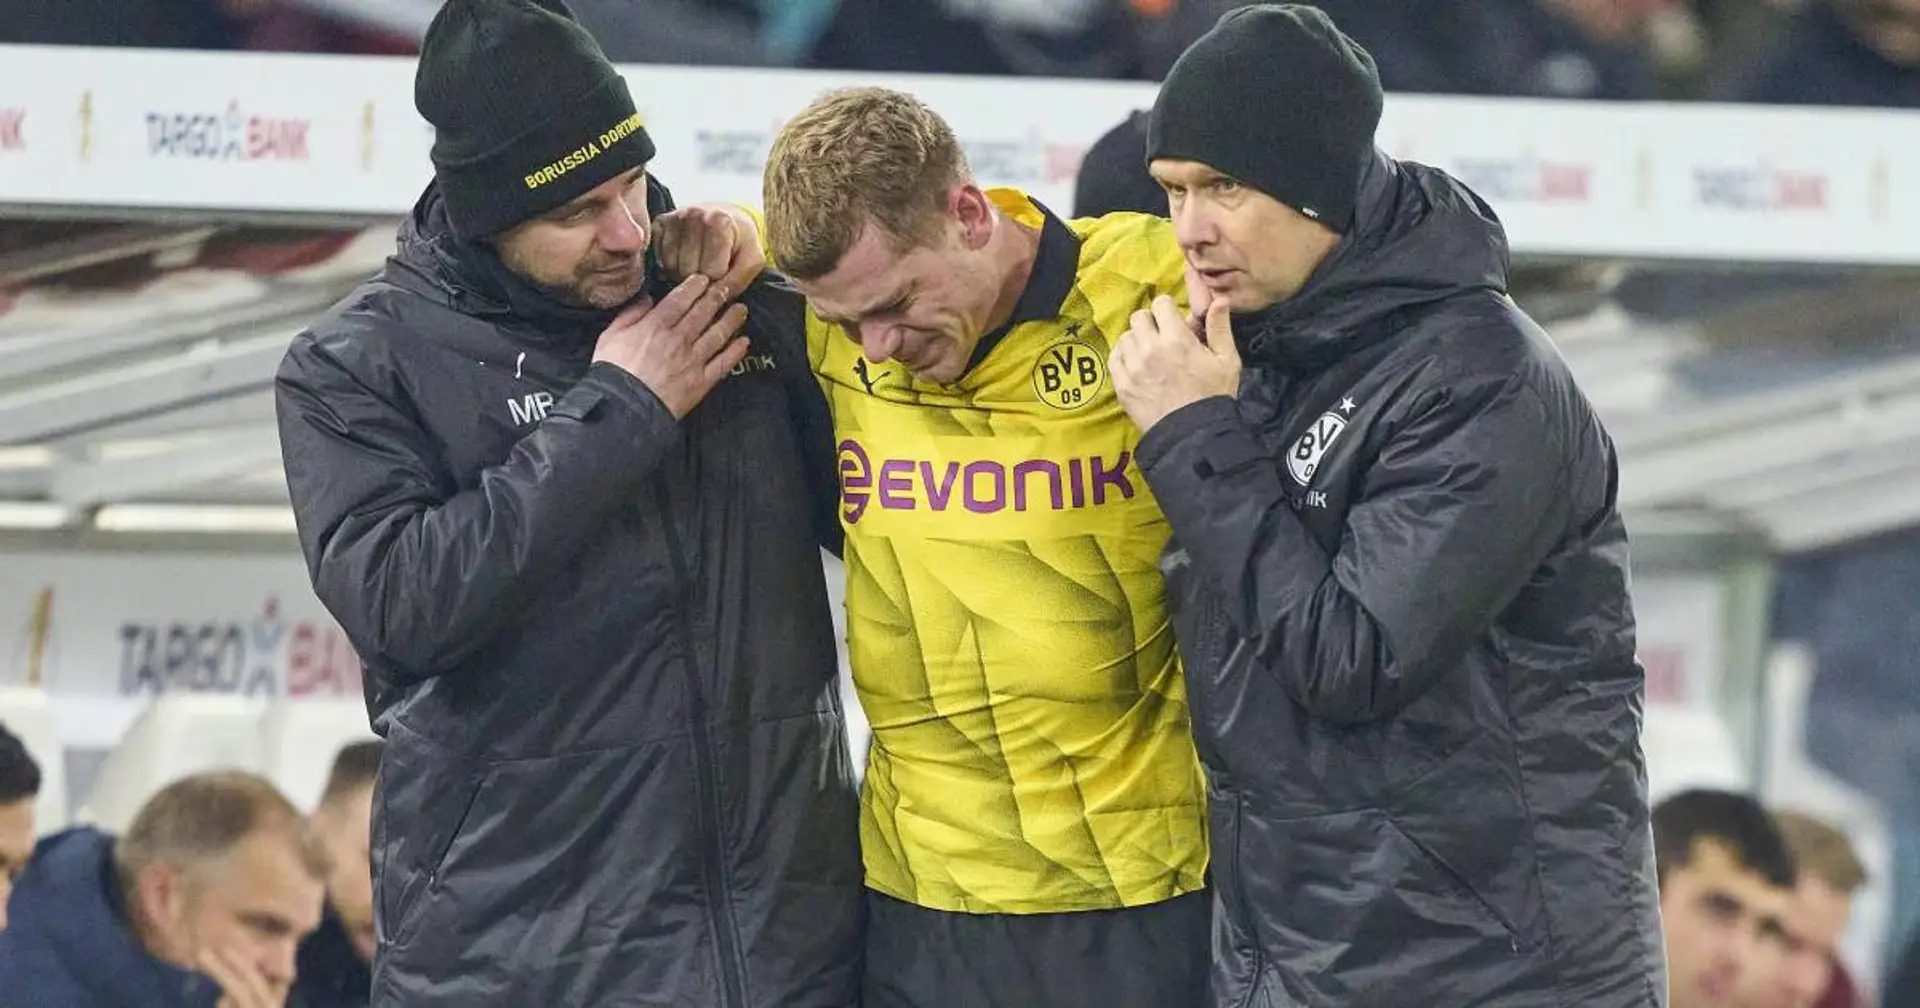 "Das Knie ist angeschwollen, das ist immer kein gutes Zeichen": BVB bangt um Ryerson und andere verletzte Spieler